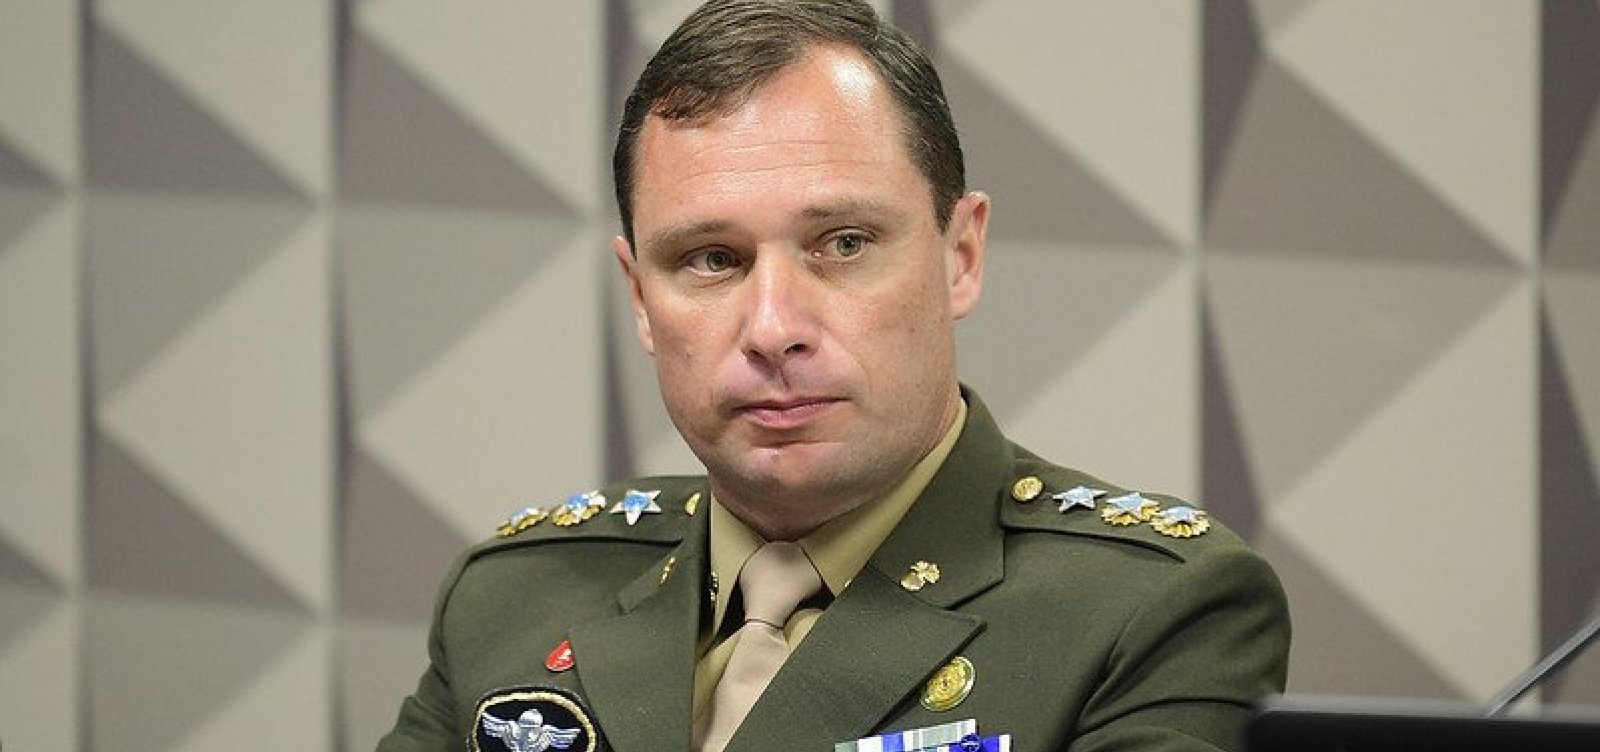 Exército retira Mauro Cid da fila de promoção a coronel